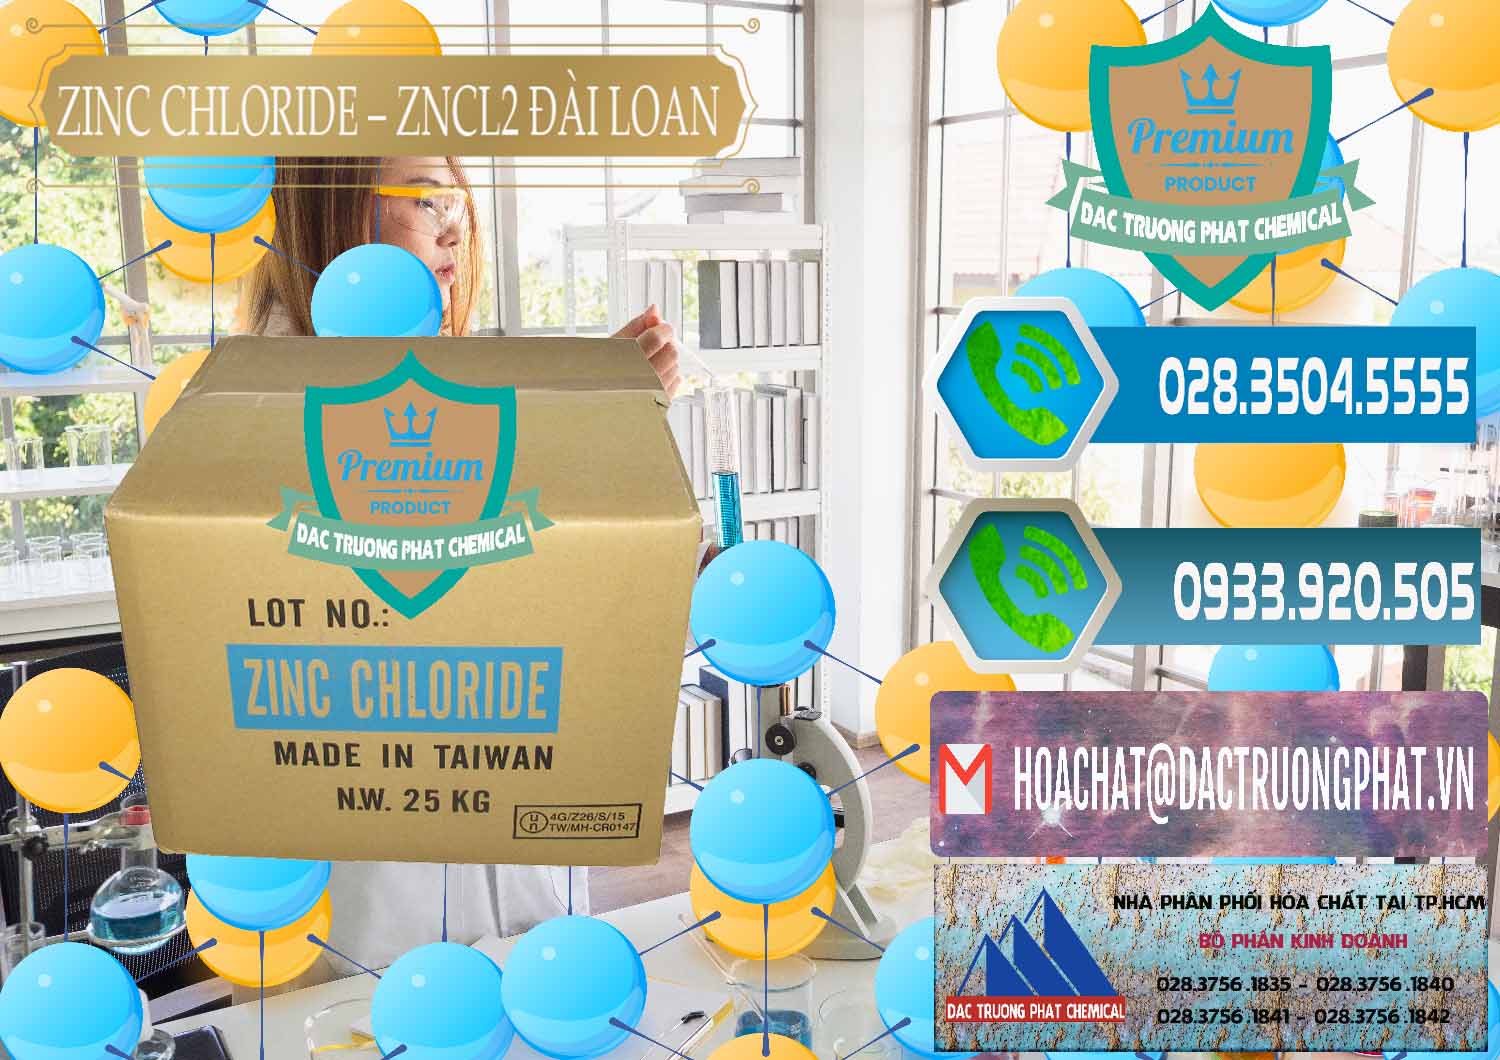 Đơn vị chuyên bán - cung cấp Zinc Chloride - ZNCL2 96% Đài Loan Taiwan - 0178 - Công ty bán & phân phối hóa chất tại TP.HCM - congtyhoachat.net